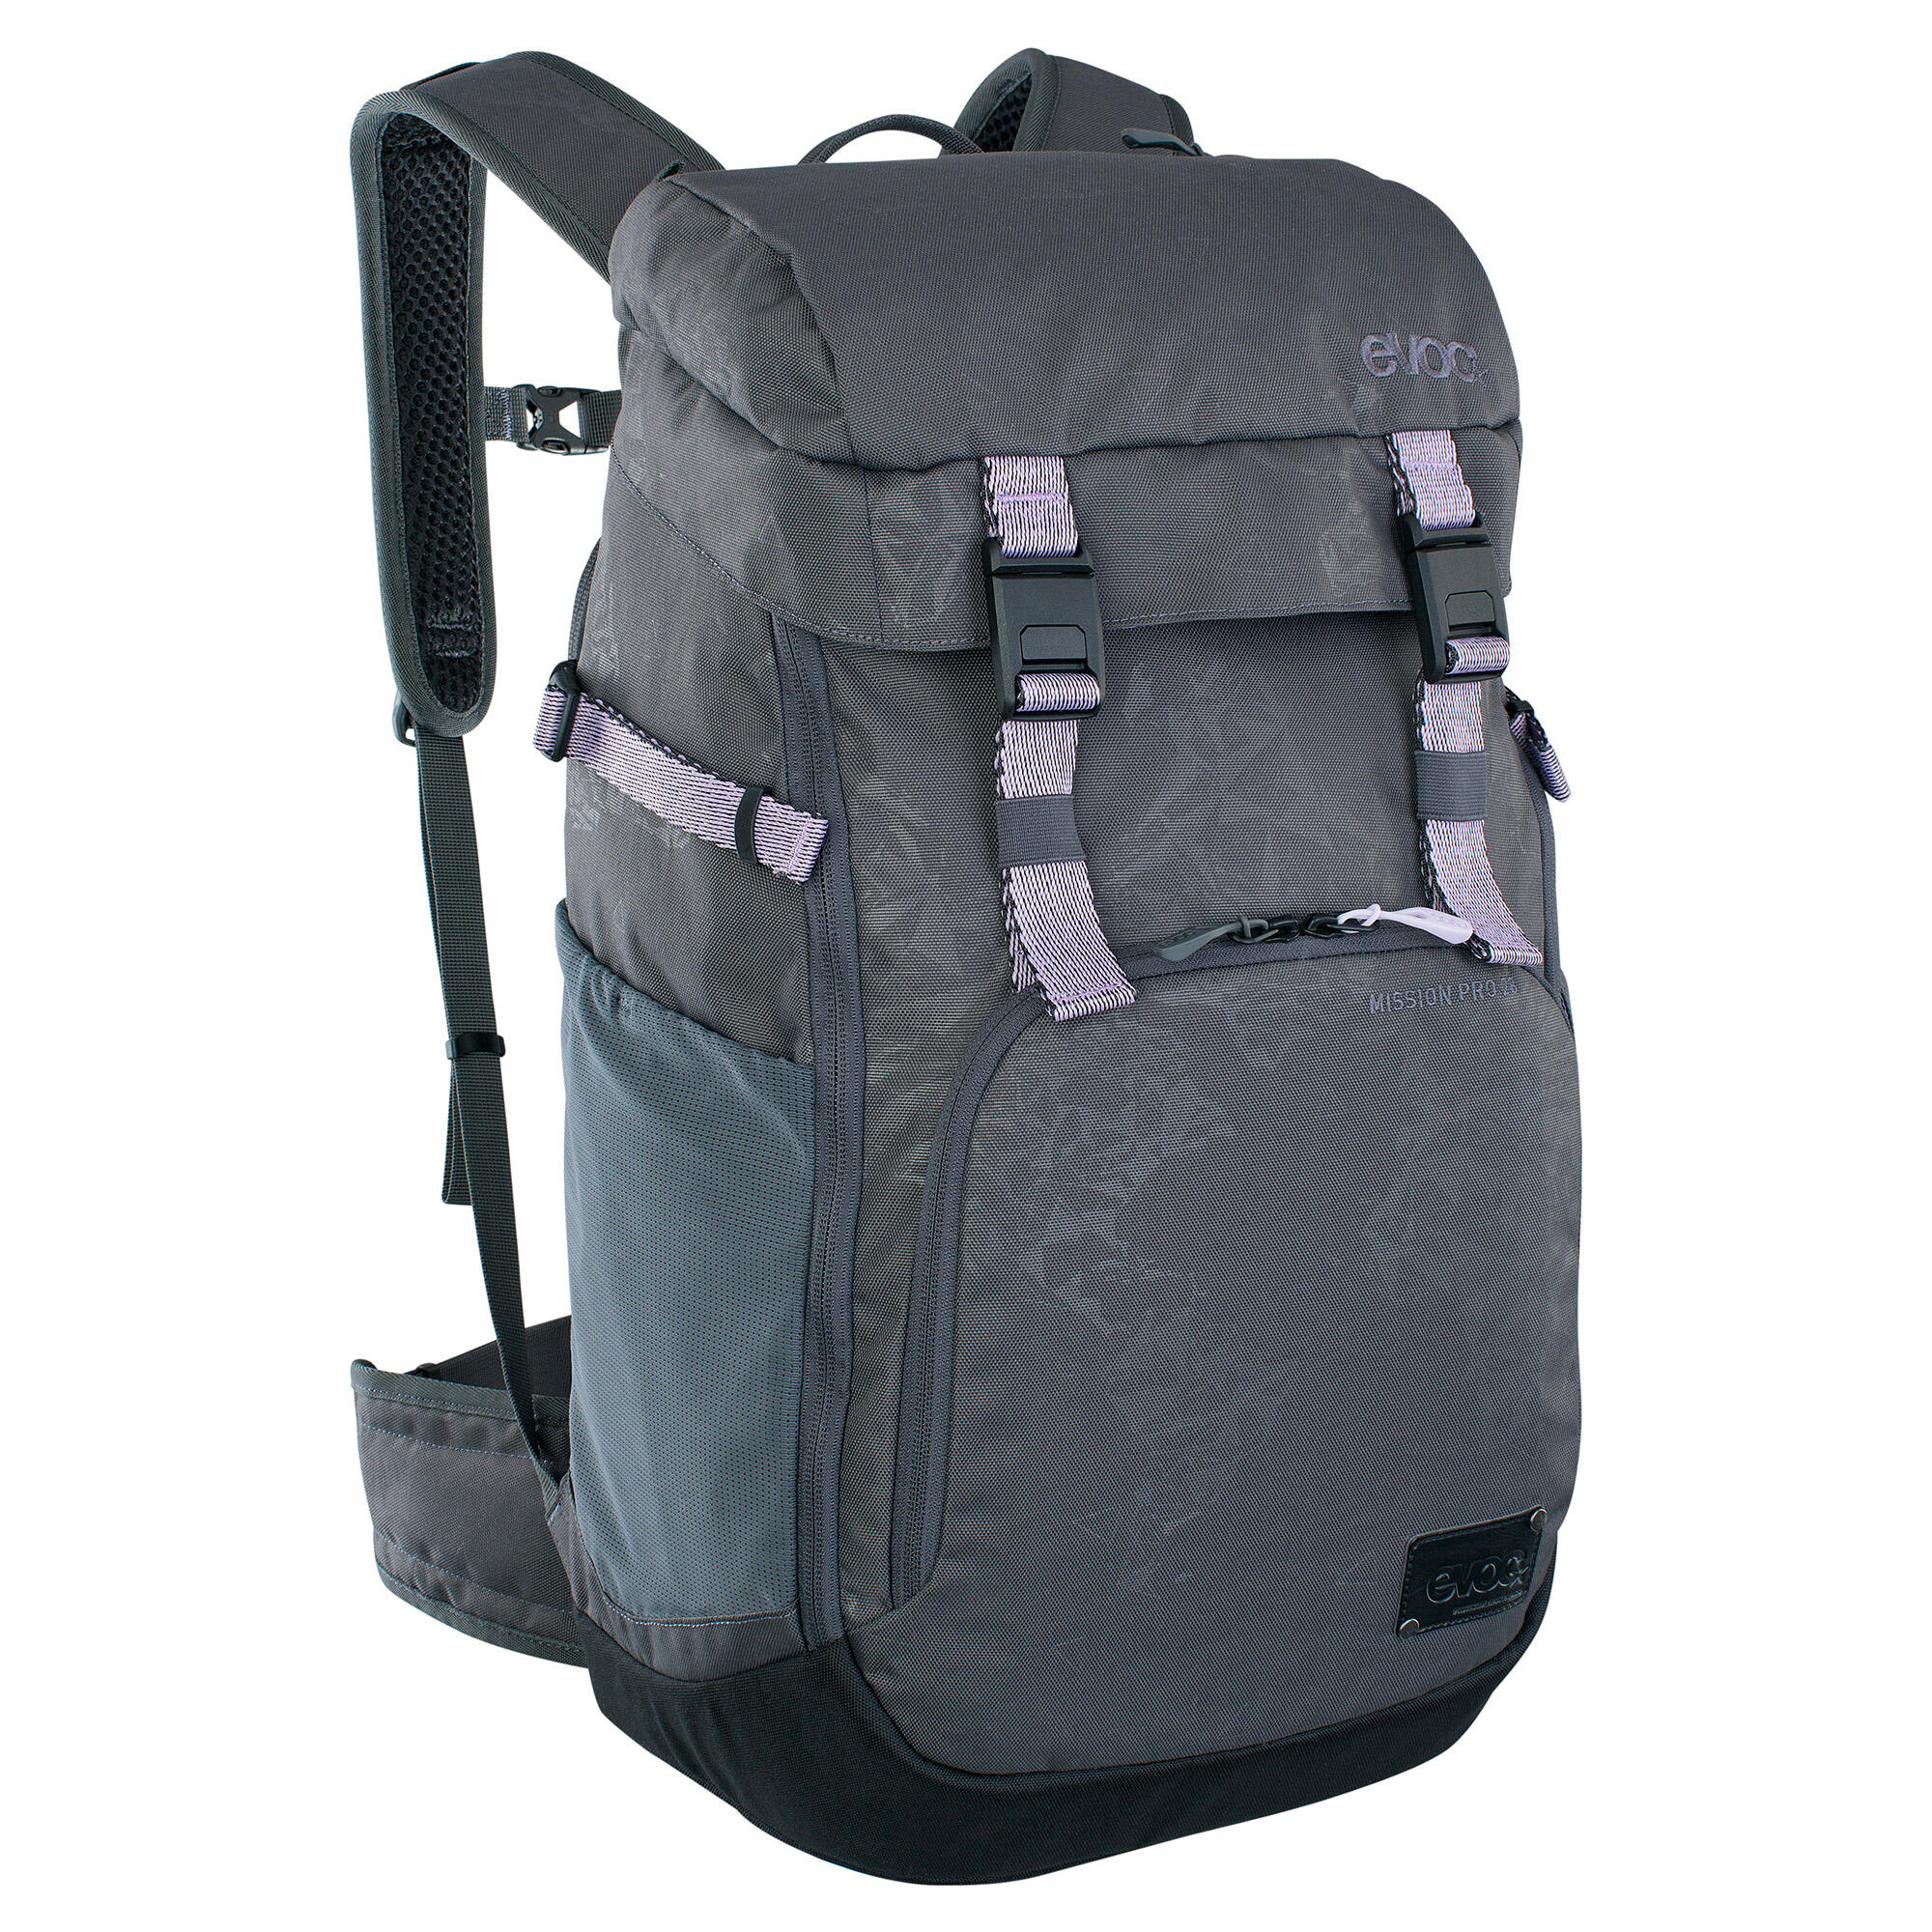 EVOC EVOC Mission Pro Backpack